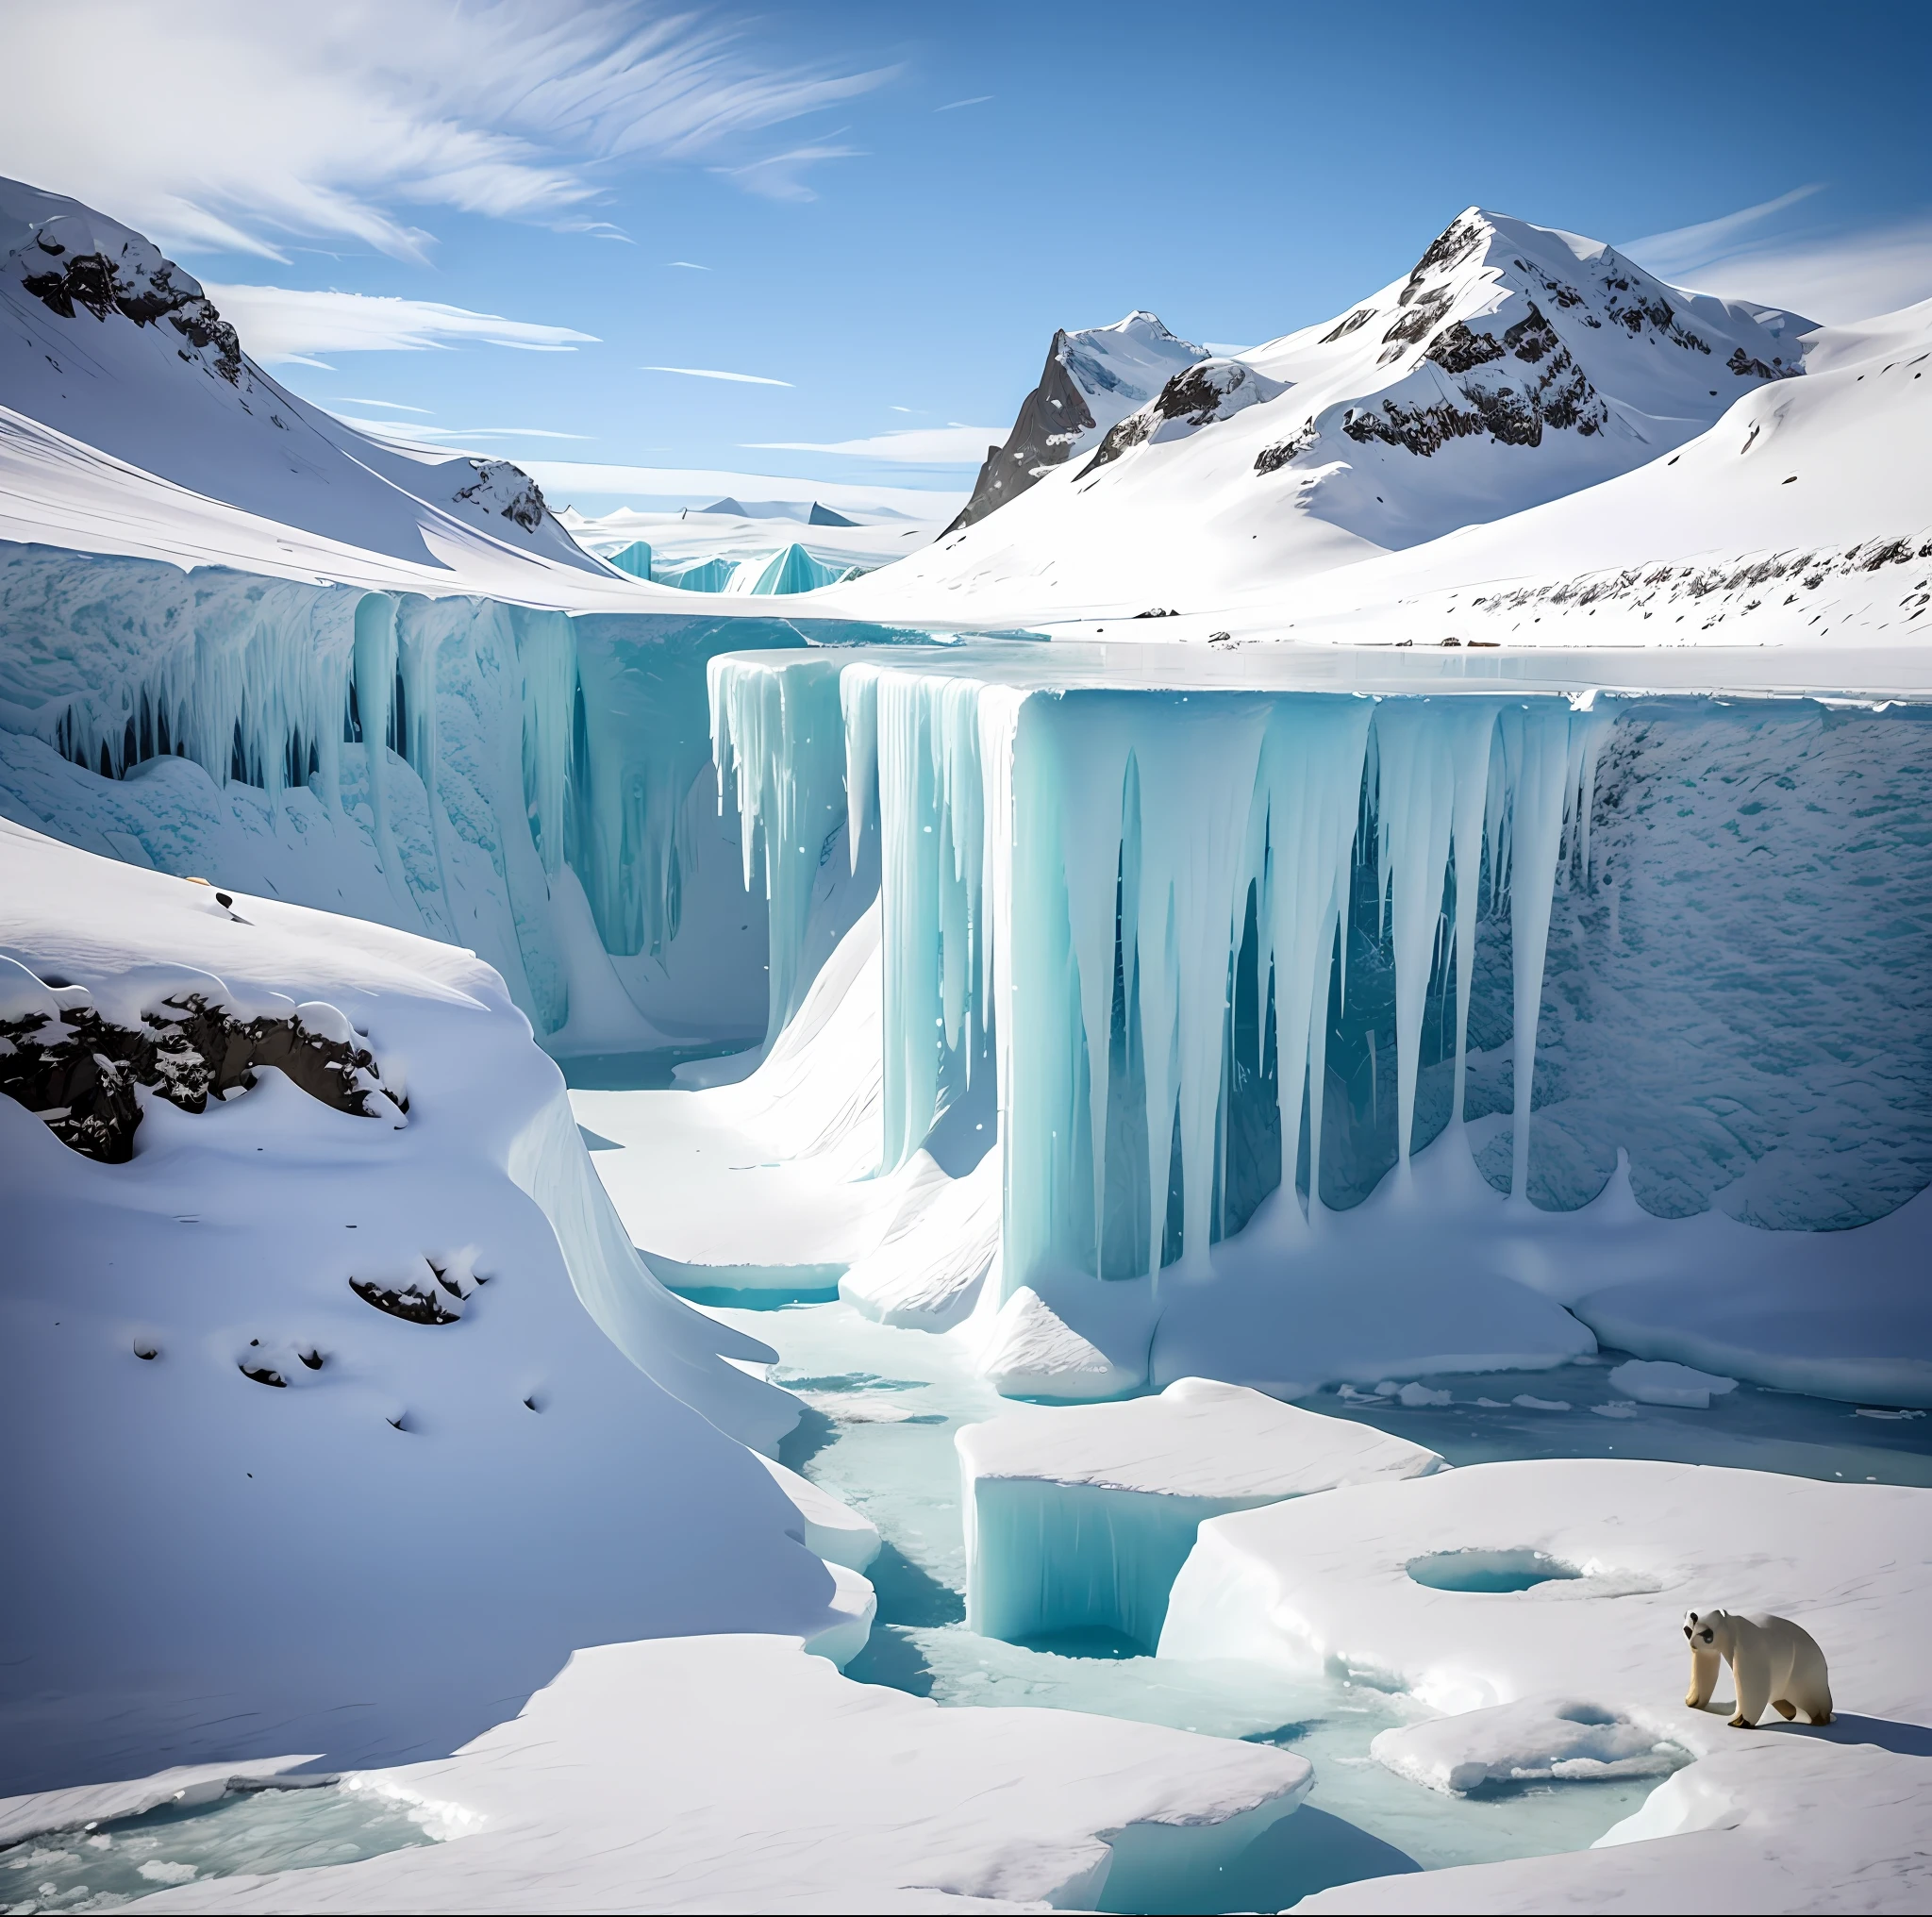 خلال عصر العصر الجليدي, كانت الأرض مغطاة بالجليد السميك وكان المناخ البارد يلف الكوكب بأكمله. المشاهد القاتمة في كل مكان, ليست أرض خضراء واحدة, فقط حقول الجليد المهجورة والجبال الجليدية.

درجات الحرارة الباردة تجعل من المستحيل على معظم الكائنات الحية البقاء على قيد الحياة, ولا يبقى في هذا العالم سوى عدد قليل من الأنواع التي تتكيف مع الظروف القاسية. تغطي رقاقات الثلج البيضاء كل المناظر الطبيعية, خلق عالم من النقاء والصمت.

هناك القليل جدا من الحياة في القارة, ولا يستطيع البقاء في مثل هذه الظروف إلا بعض الثدييات والطيور التي تتكيف مع البيئة الجليدية. تجوب الدببة القطبية البيضاء حقول الجليد بحثًا عن طعام نادر. يساعدهم جلدهم وطبقة الدهون السميكة على مقاومة البرد والبقاء على قيد الحياة.

شكلت الأنهار الجليدية والجبال الجليدية مناظر طبيعية خلابة خلال هذه الحقبة. كتل ضخمة من الجليد تتحرك ببطء, كشط السطح, خلق الوديان العميقة والمضايق. تتدفق المياه الجليدية عبر النهر الجليدي, إنشاء شلالات وبحيرات مذهلة.

في هذا العالم الكئيب, الوجود البشري يكاد لا يكاد يذكر. يمكنهم البقاء على قيد الحياة فقط باستخدام الأدوات والتقنيات البدائية, بحثاً عن الغذاء والماء الشحيحين. يعيشون في كهوف متواضعة, يحفظون أنفسهم بعيدًا عن الرياح الباردة والثلوج.